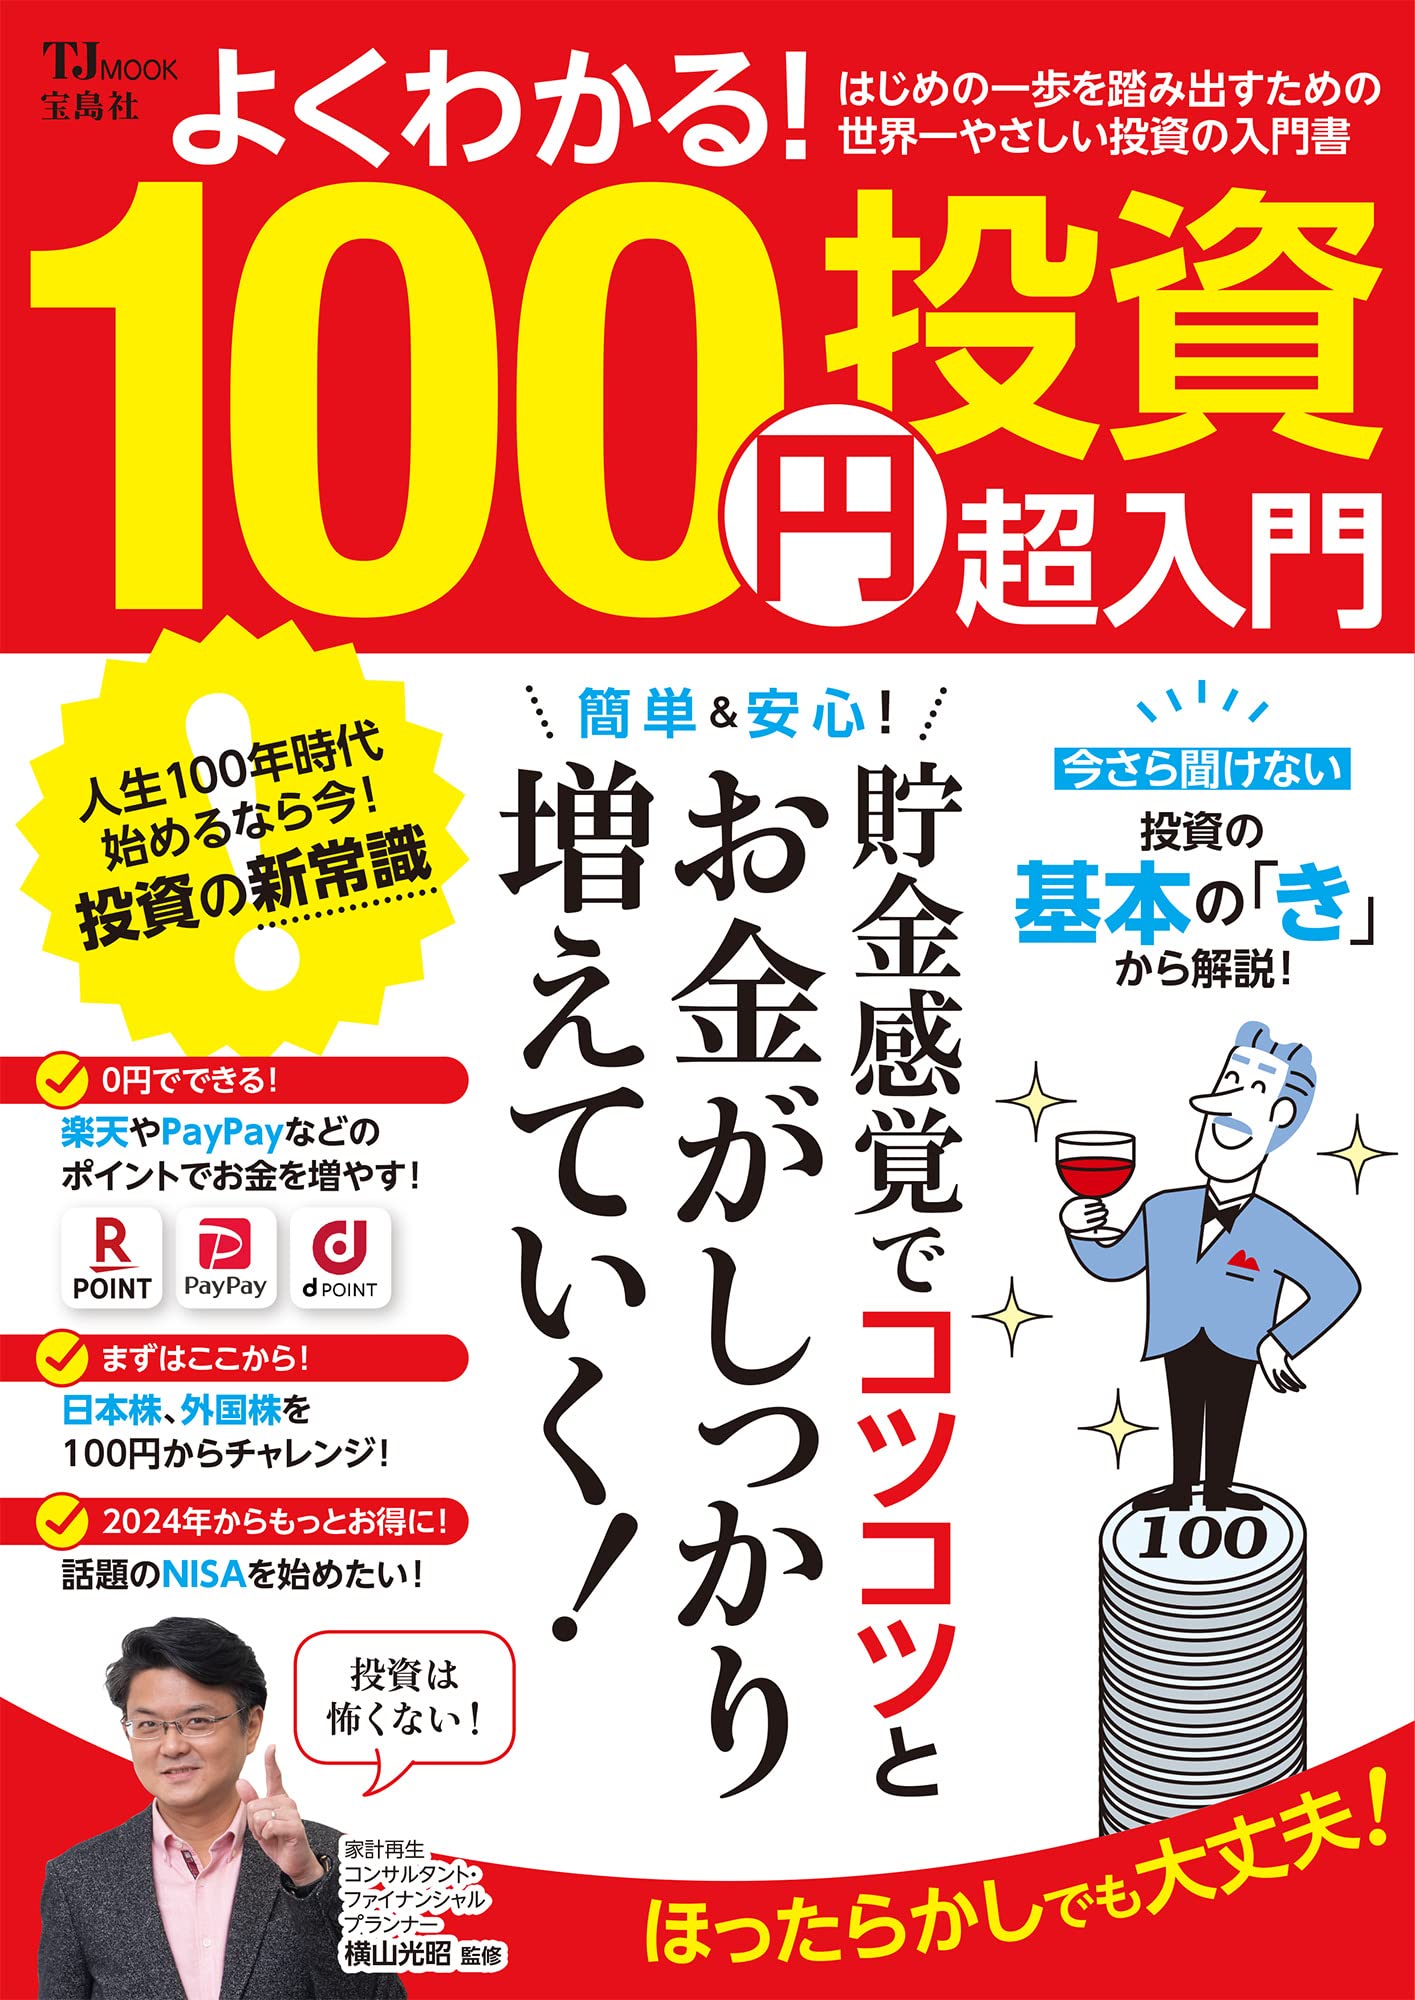 よくわかる! 100円投資 超入門 (TJMOOK)